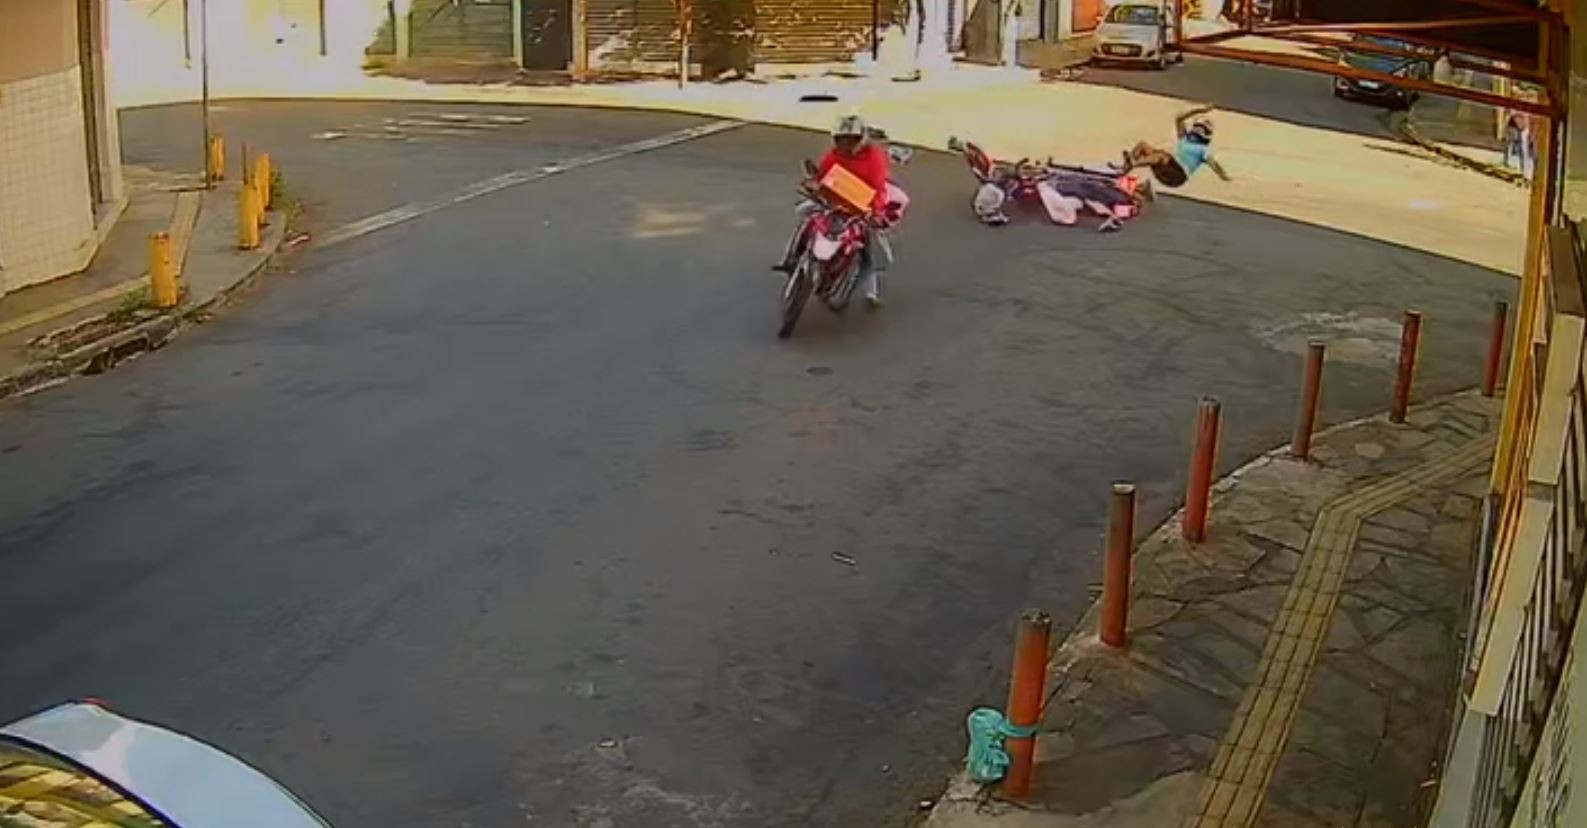 Vídeos mostram sequência de acidentes em cruzamento de ruas em Goiânia